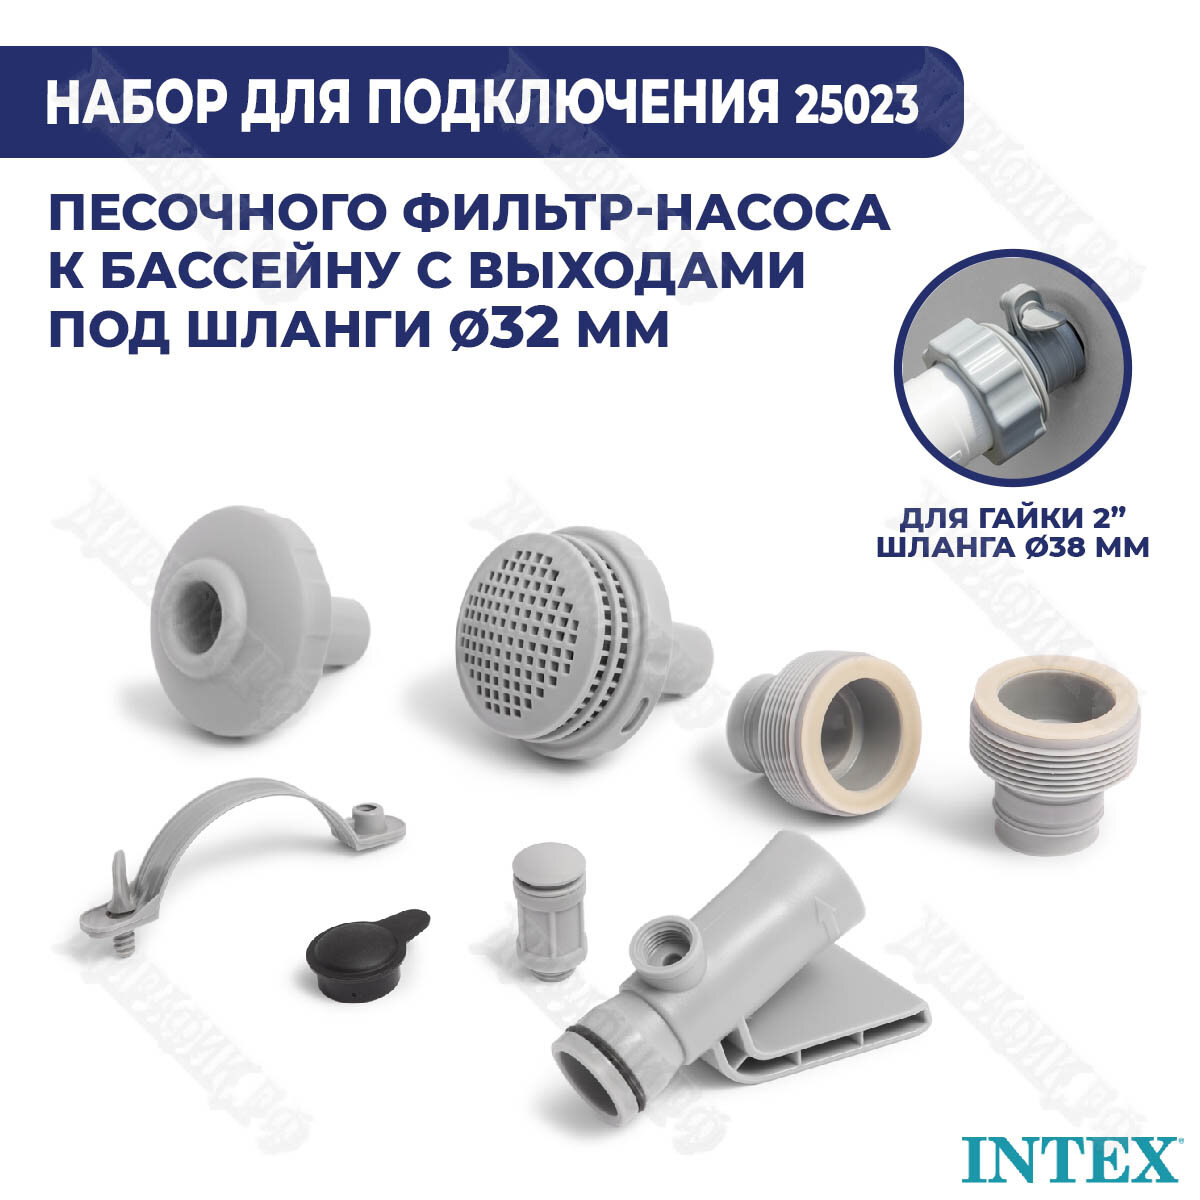 Комплект для подключения песочного фильтра Intex 25023